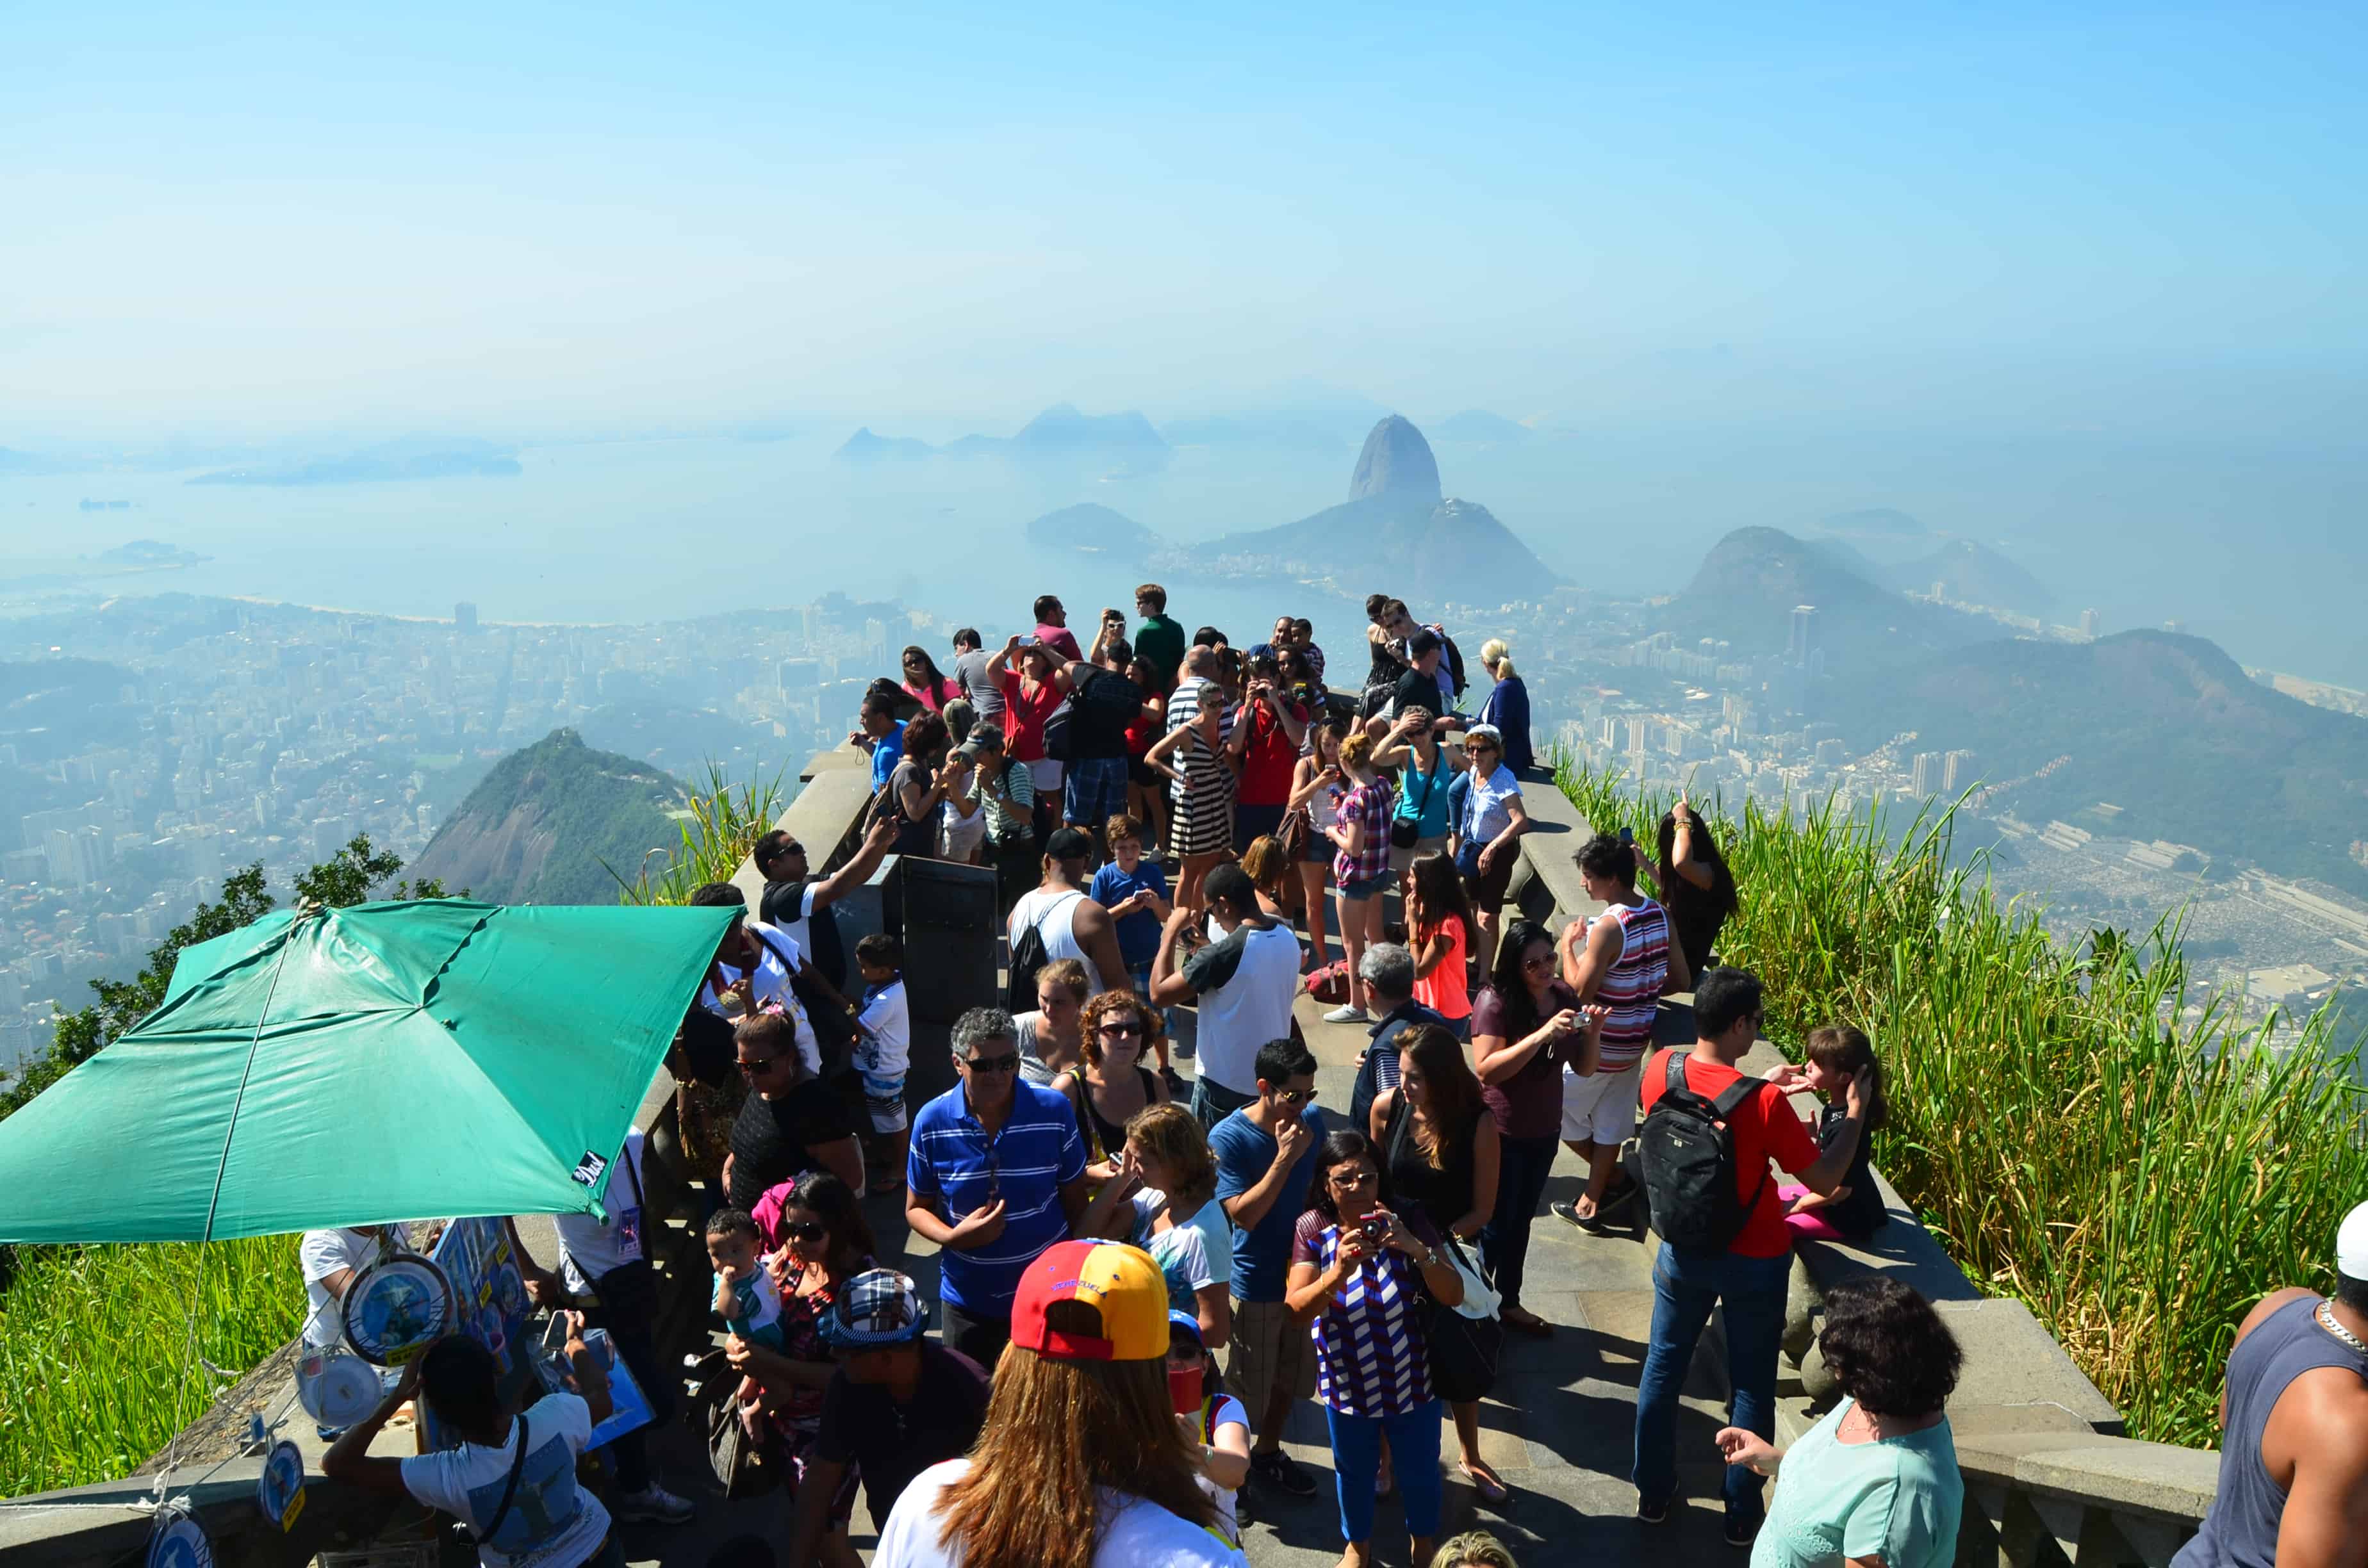 The crowd at Corcovado in Rio de Janeiro, Brazil